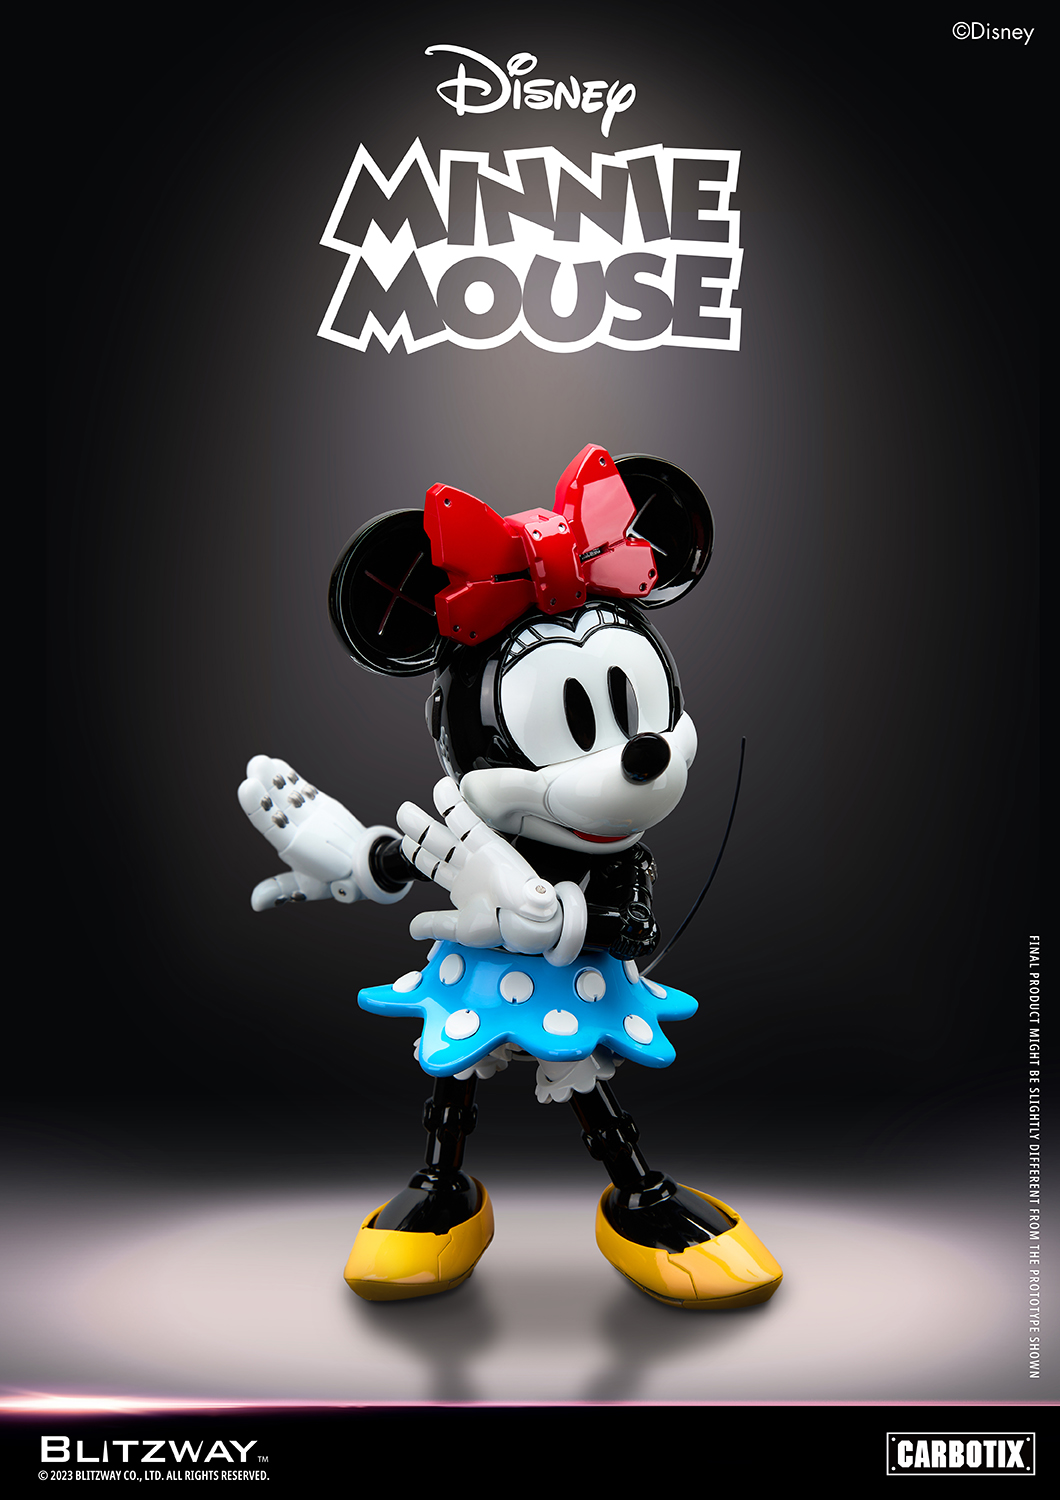 ディズニー「CARBOTIX ミニーマウス」のフィギュア画像